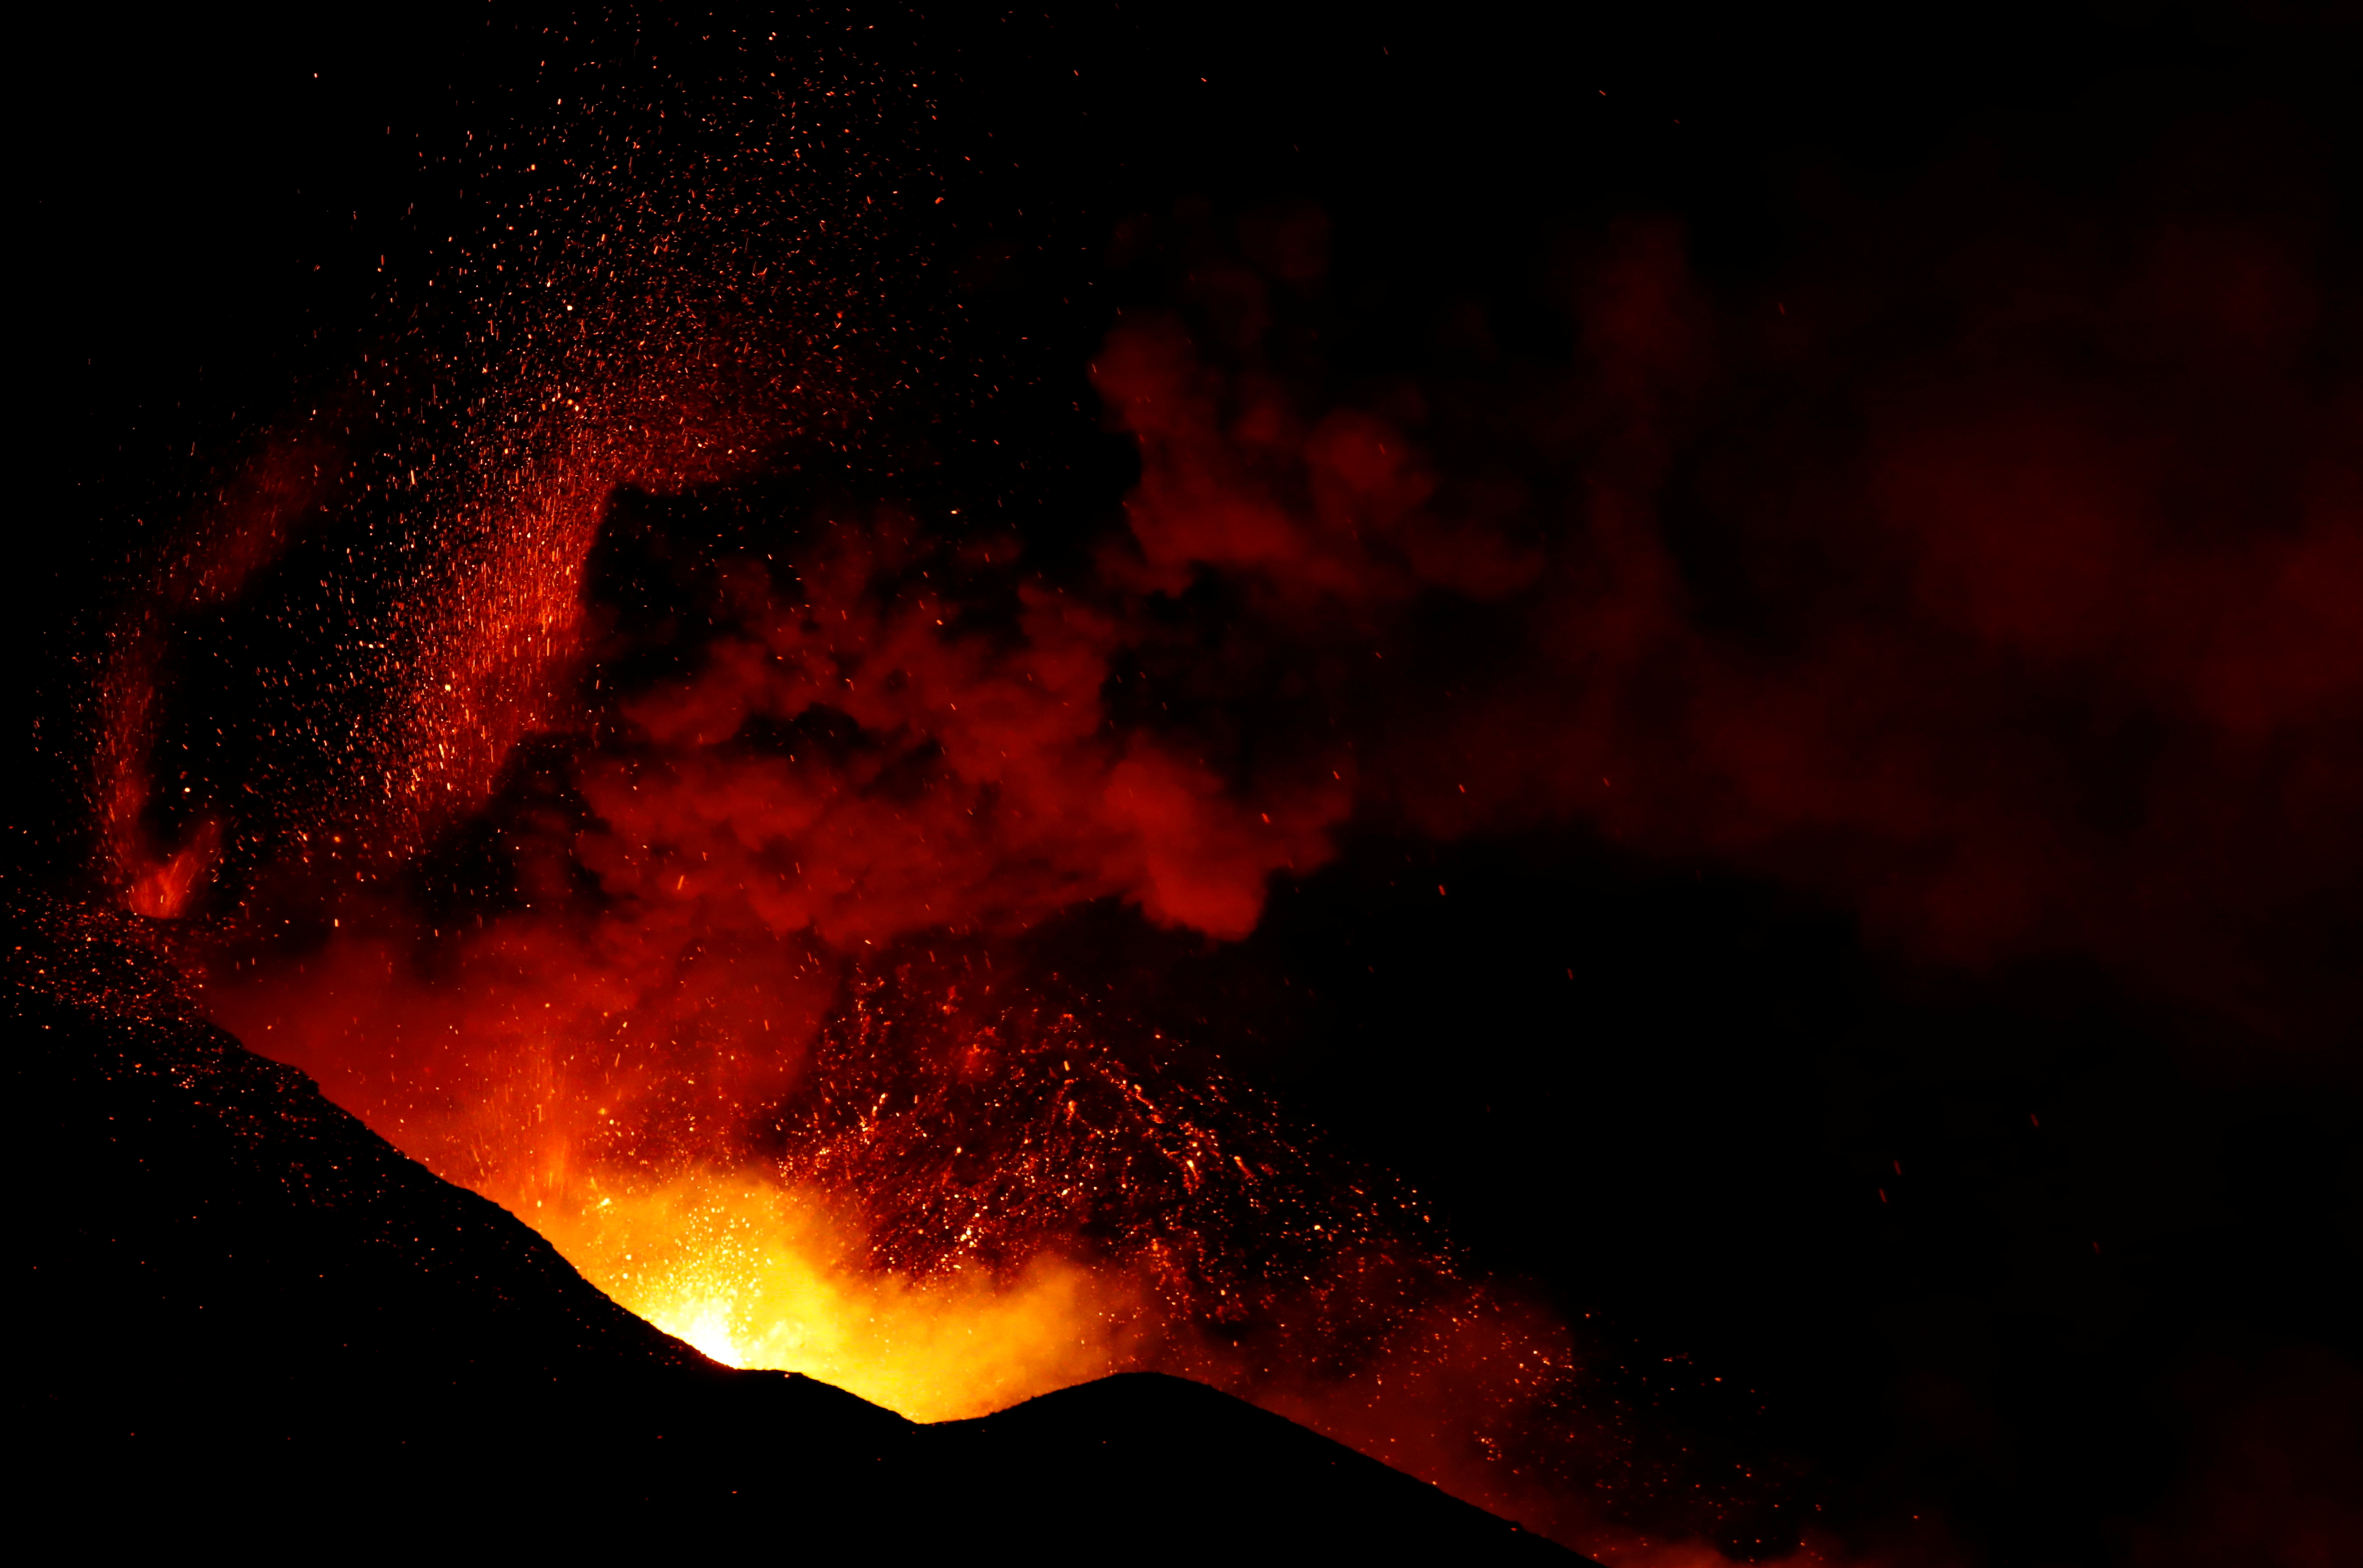 Volcán de La Palma: crece la emisión de lava y ceniza, mientras empeora la calidad del aire